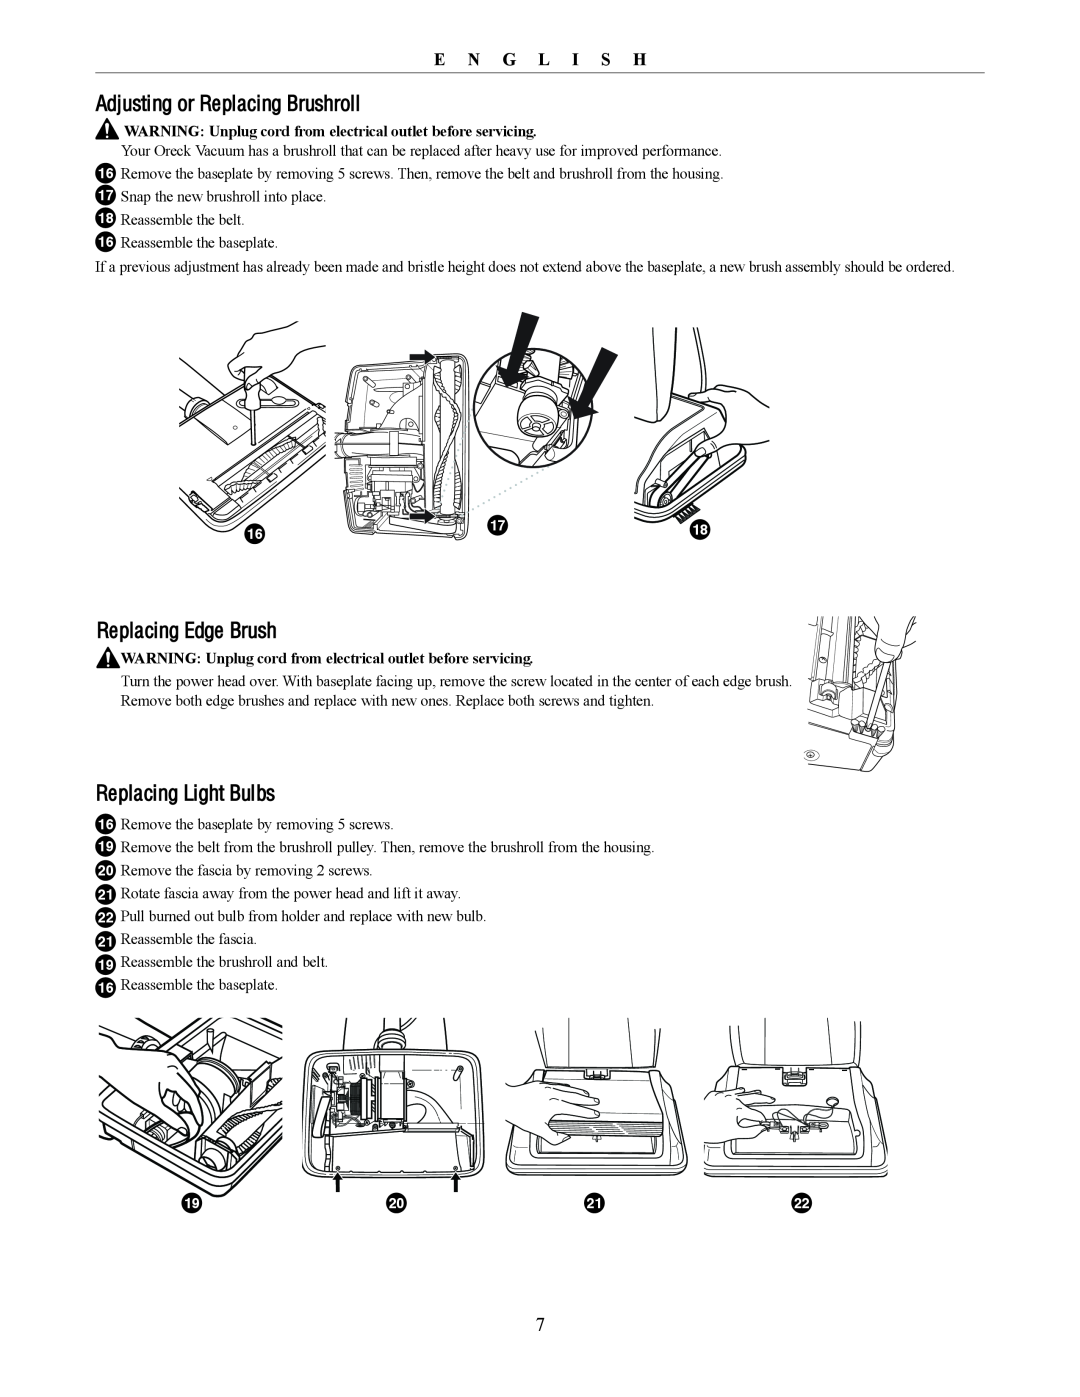 Oreck U4300 manual Adjusting or Replacing Brushroll, Replacing Edge Brush, Replacing Light Bulbs, E N G L I S H 